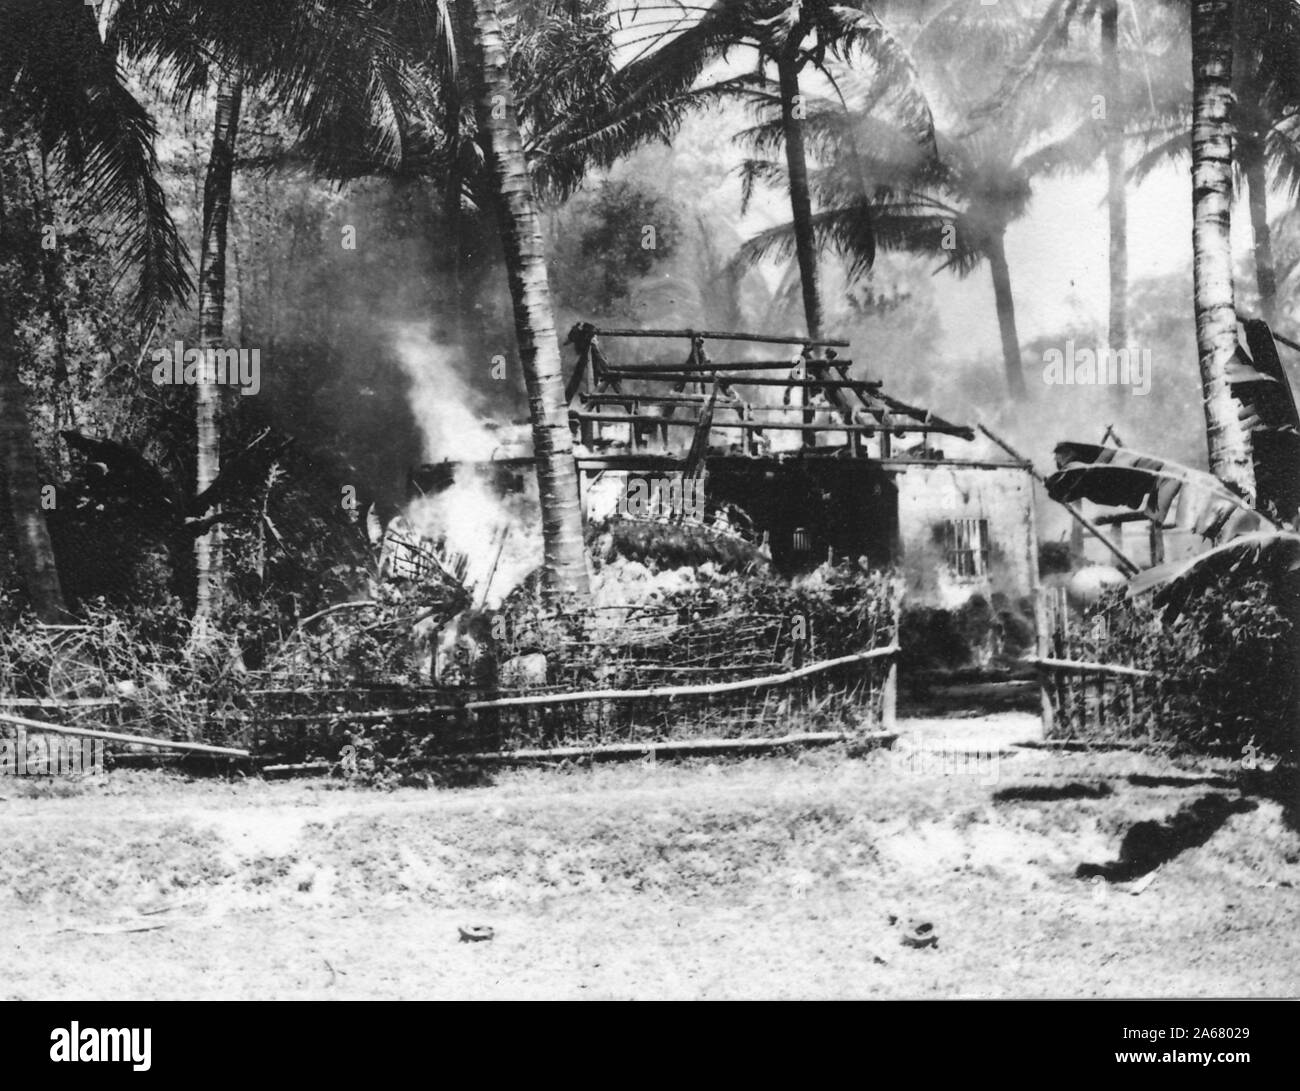 Mittelschuss eines kleinen Schwelgebäudes mit verbrannten Dachtrusseln, inmitten einer Palmendecke, Vietnam, 1965. () Stockfoto